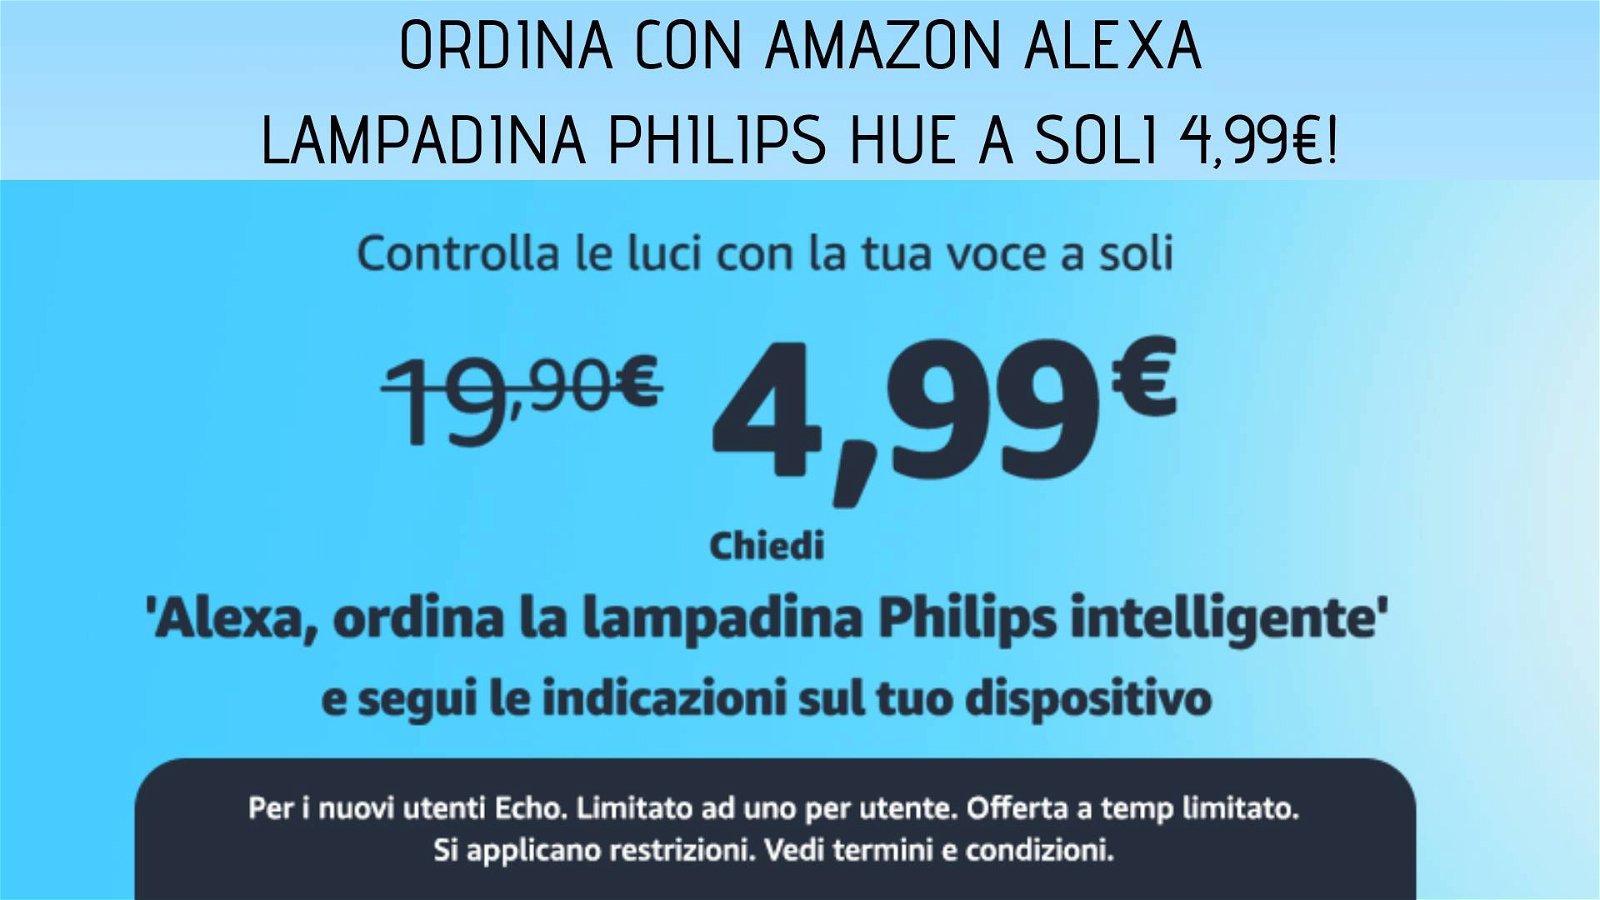 Immagine di Fai acquisti con Amazon Alexa: la lampadina Philips Hue ti costa solo 4,99€!